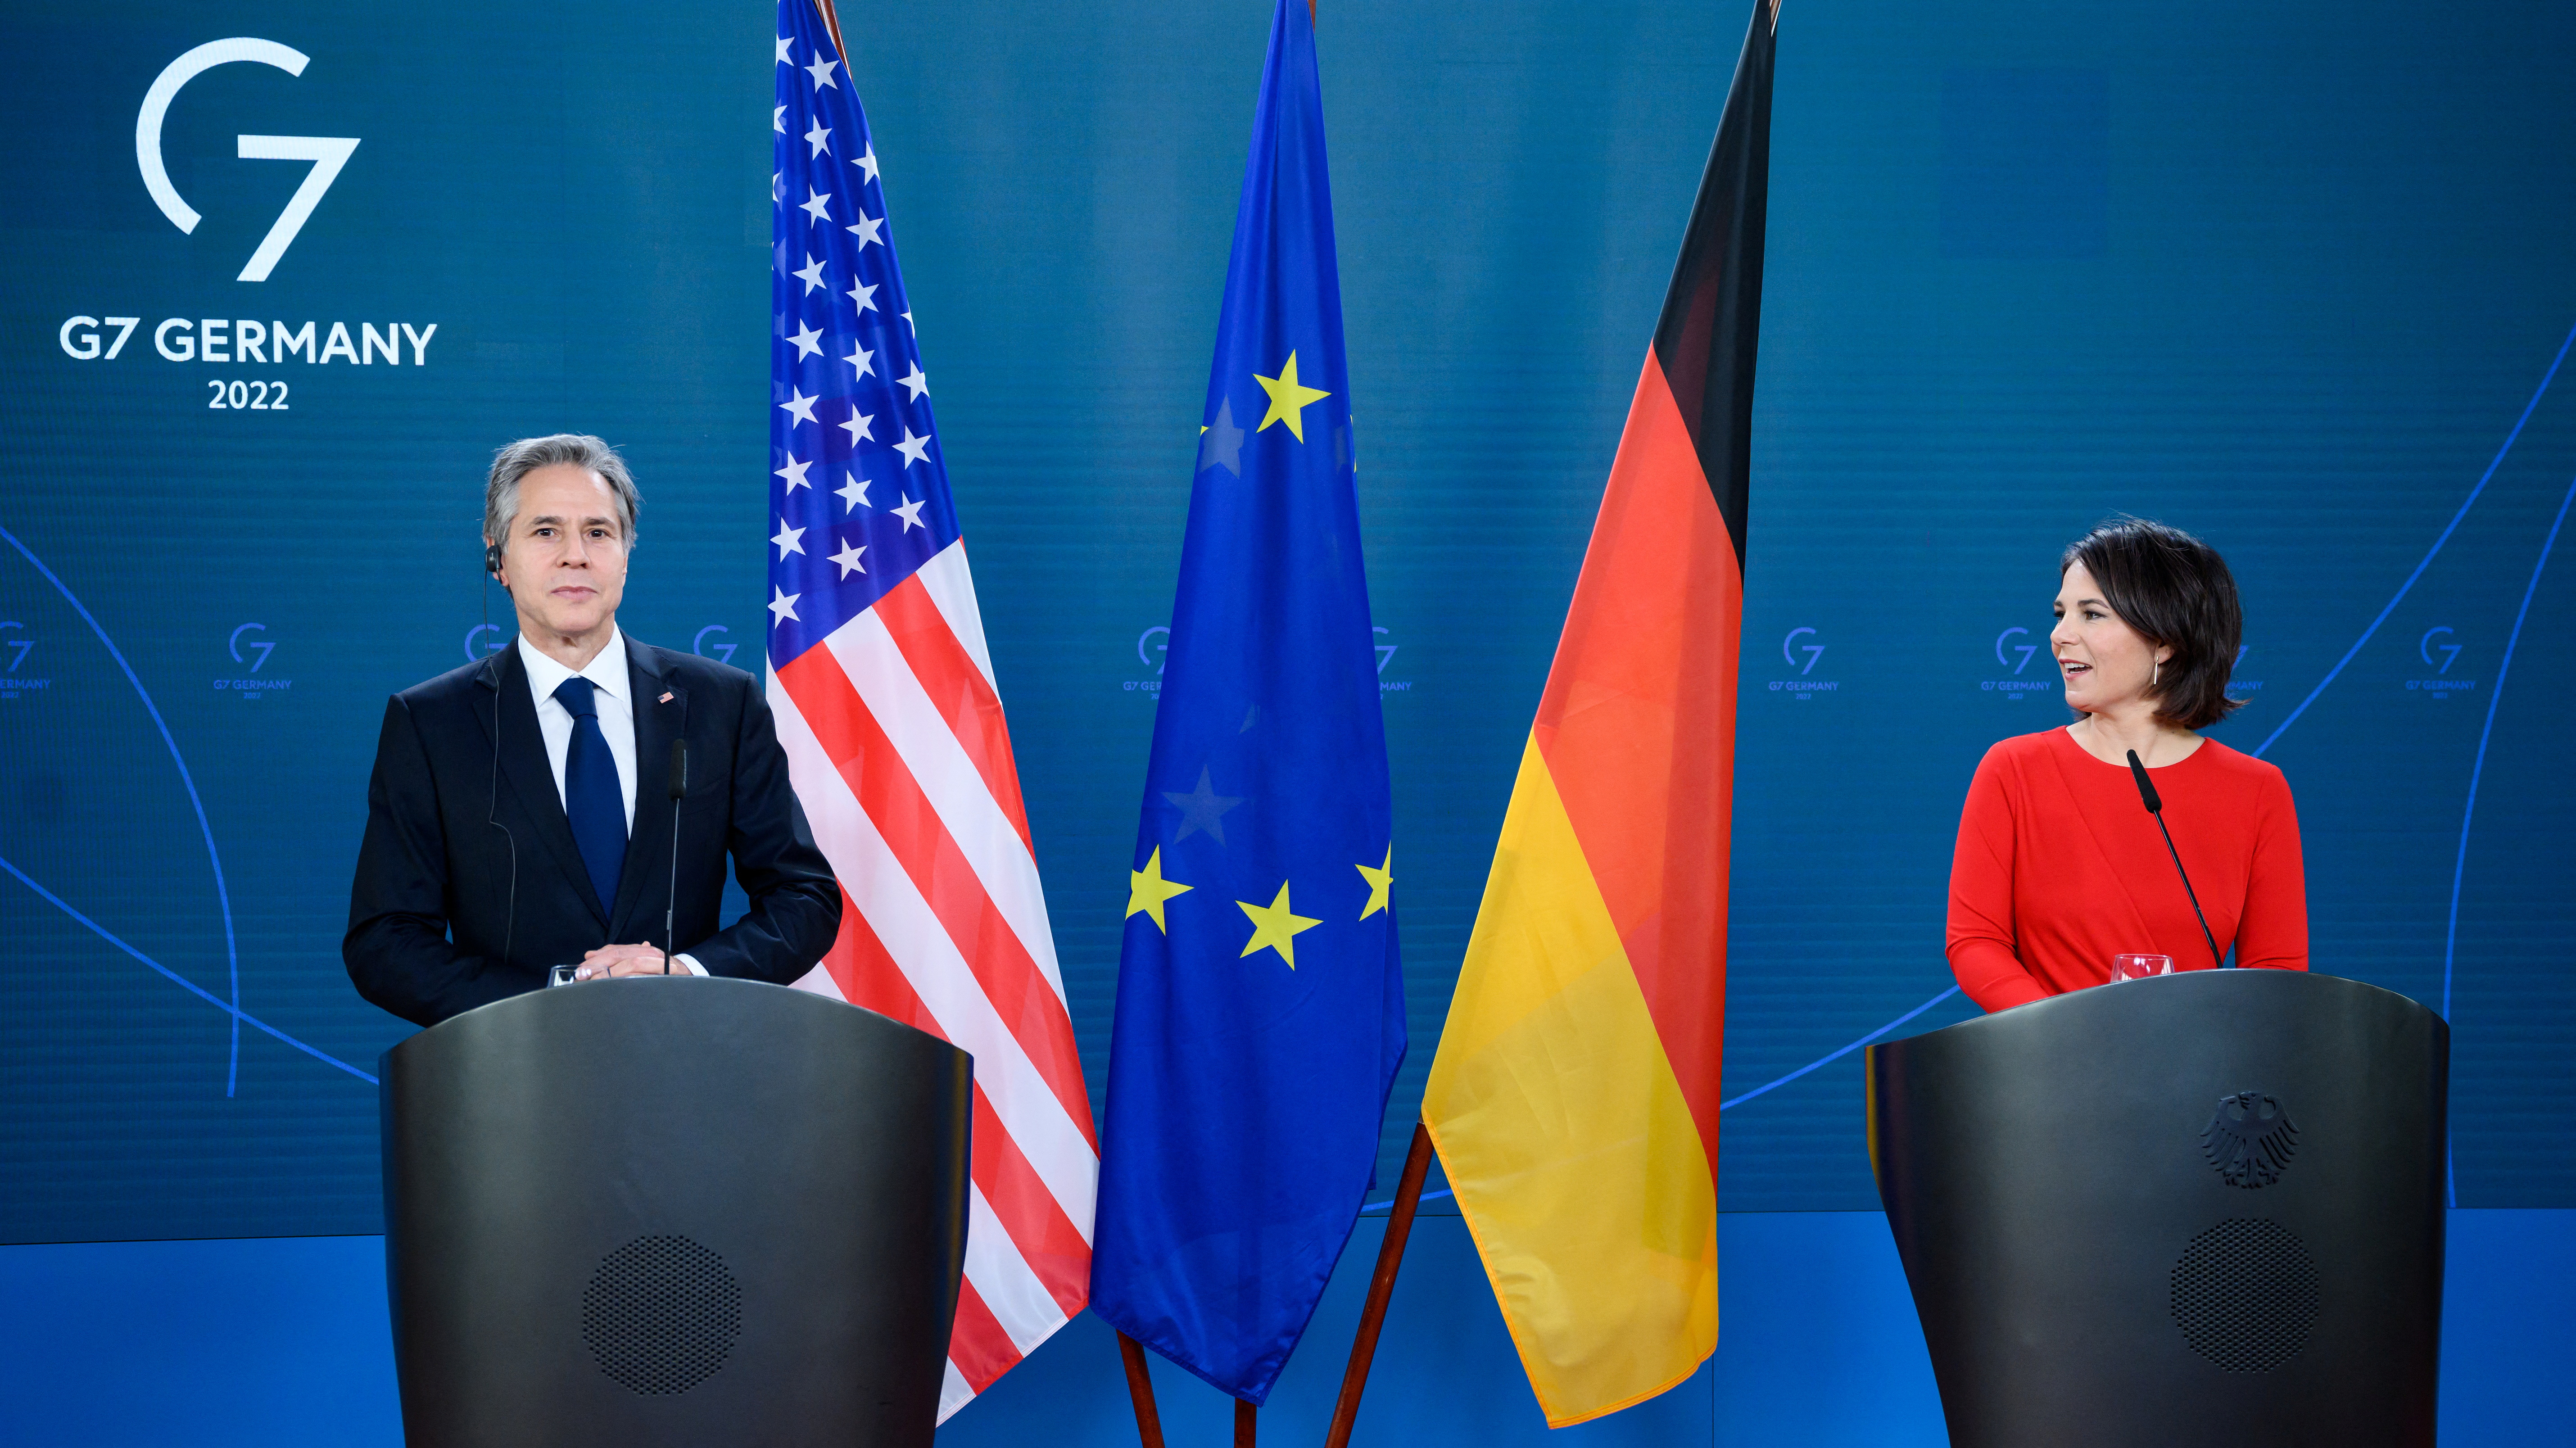 La ministra de Asuntos Exteriores alemana, Annalena Baerbock, y el secretario de Estado estadounidense, Antony Blinken, se dirigen a los medios de comunicación tras una reunión sobre la crisis alimentaria mundial, en el Ministerio de Asuntos Exteriores en Berlín, Alemania, el 24 de junio de 2022. Bernd von Jutrczenka/Pool vía REUTERS